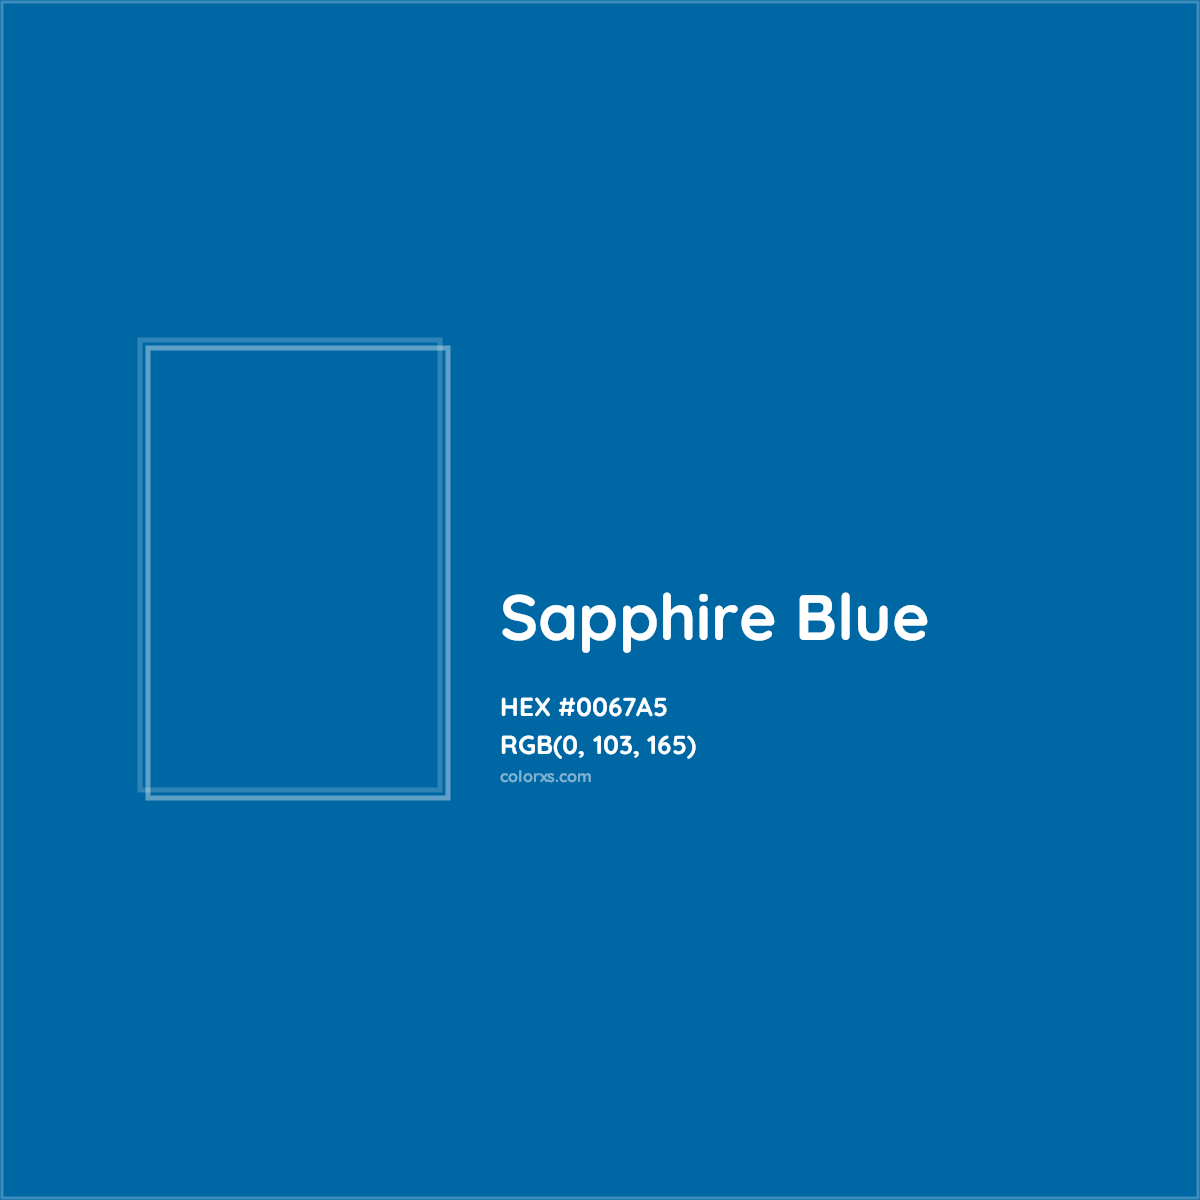 HEX #0067A5 Sapphire Blue Color - Color Code